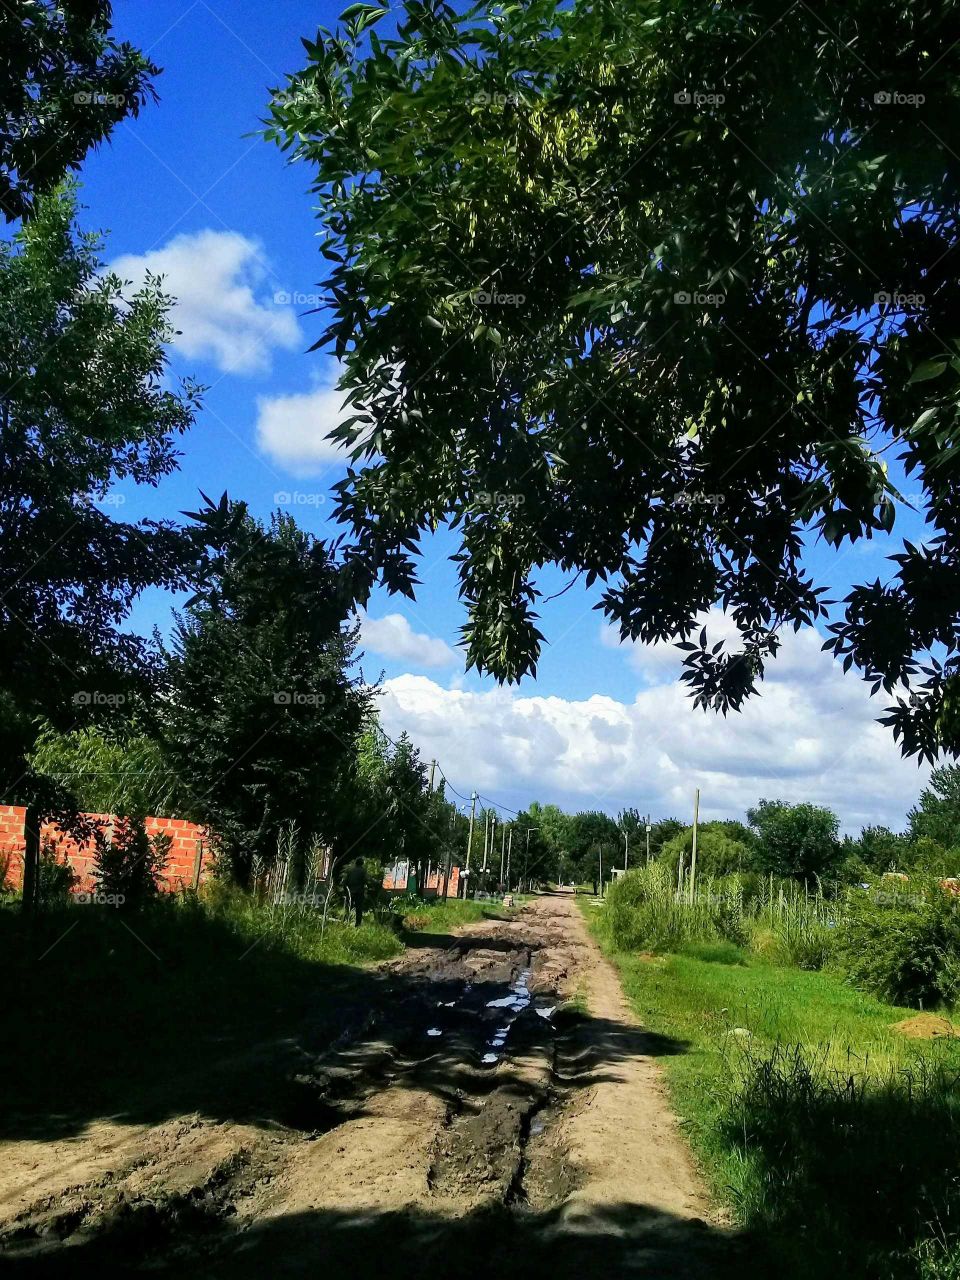 típica calle de tierra de un barrio semi rural en una apacible y calurosa tarde de verano.